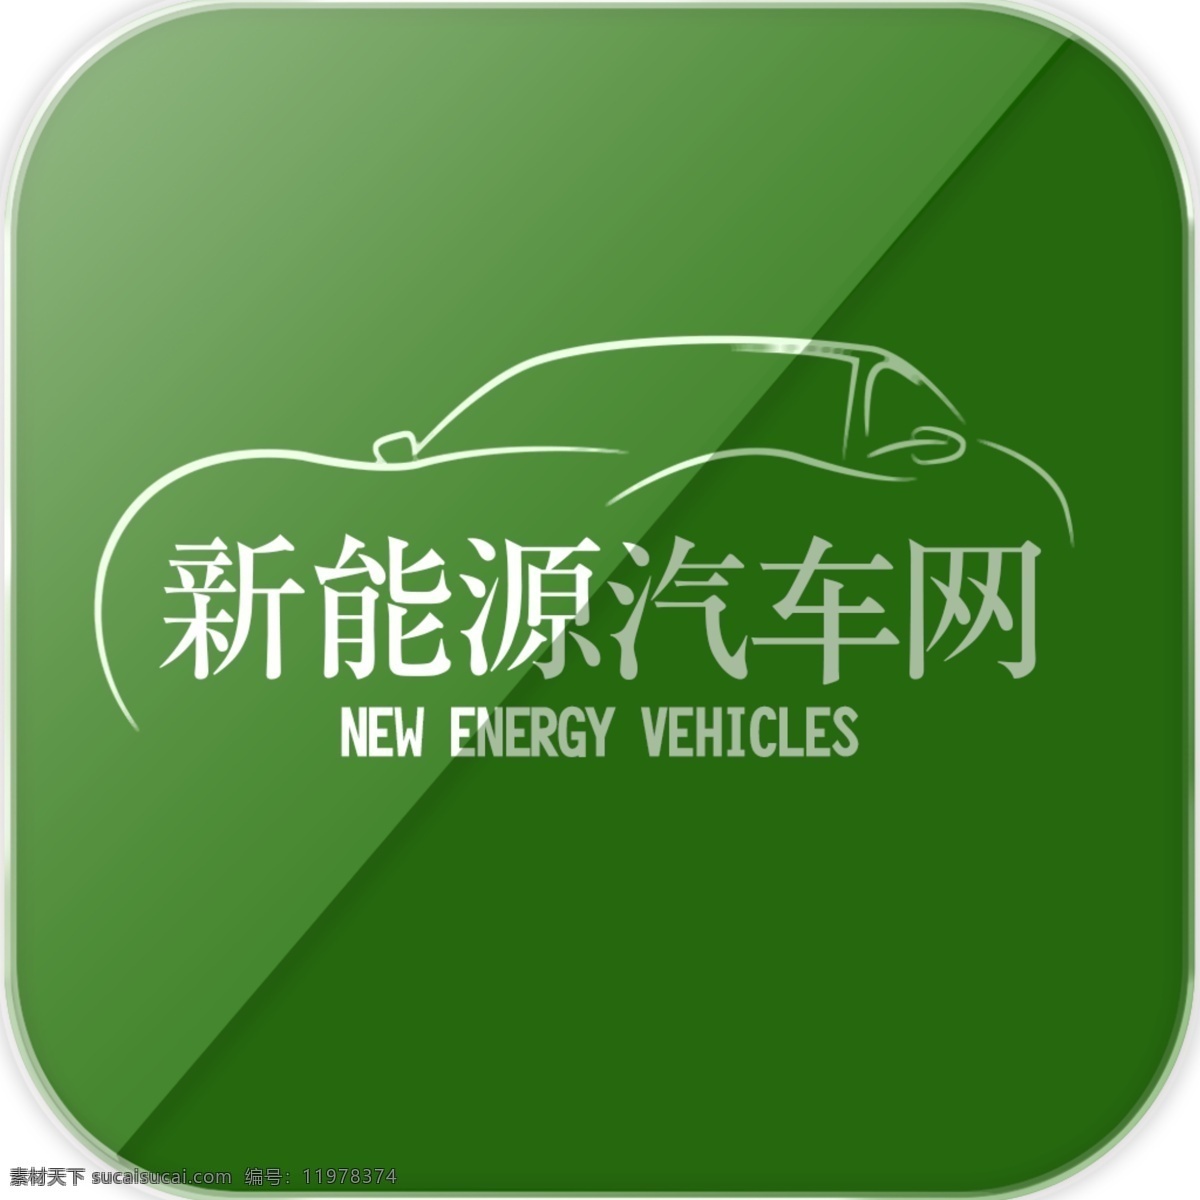 新能源 汽车 网 二 版 绿色 汽车图标 现代科技 环保